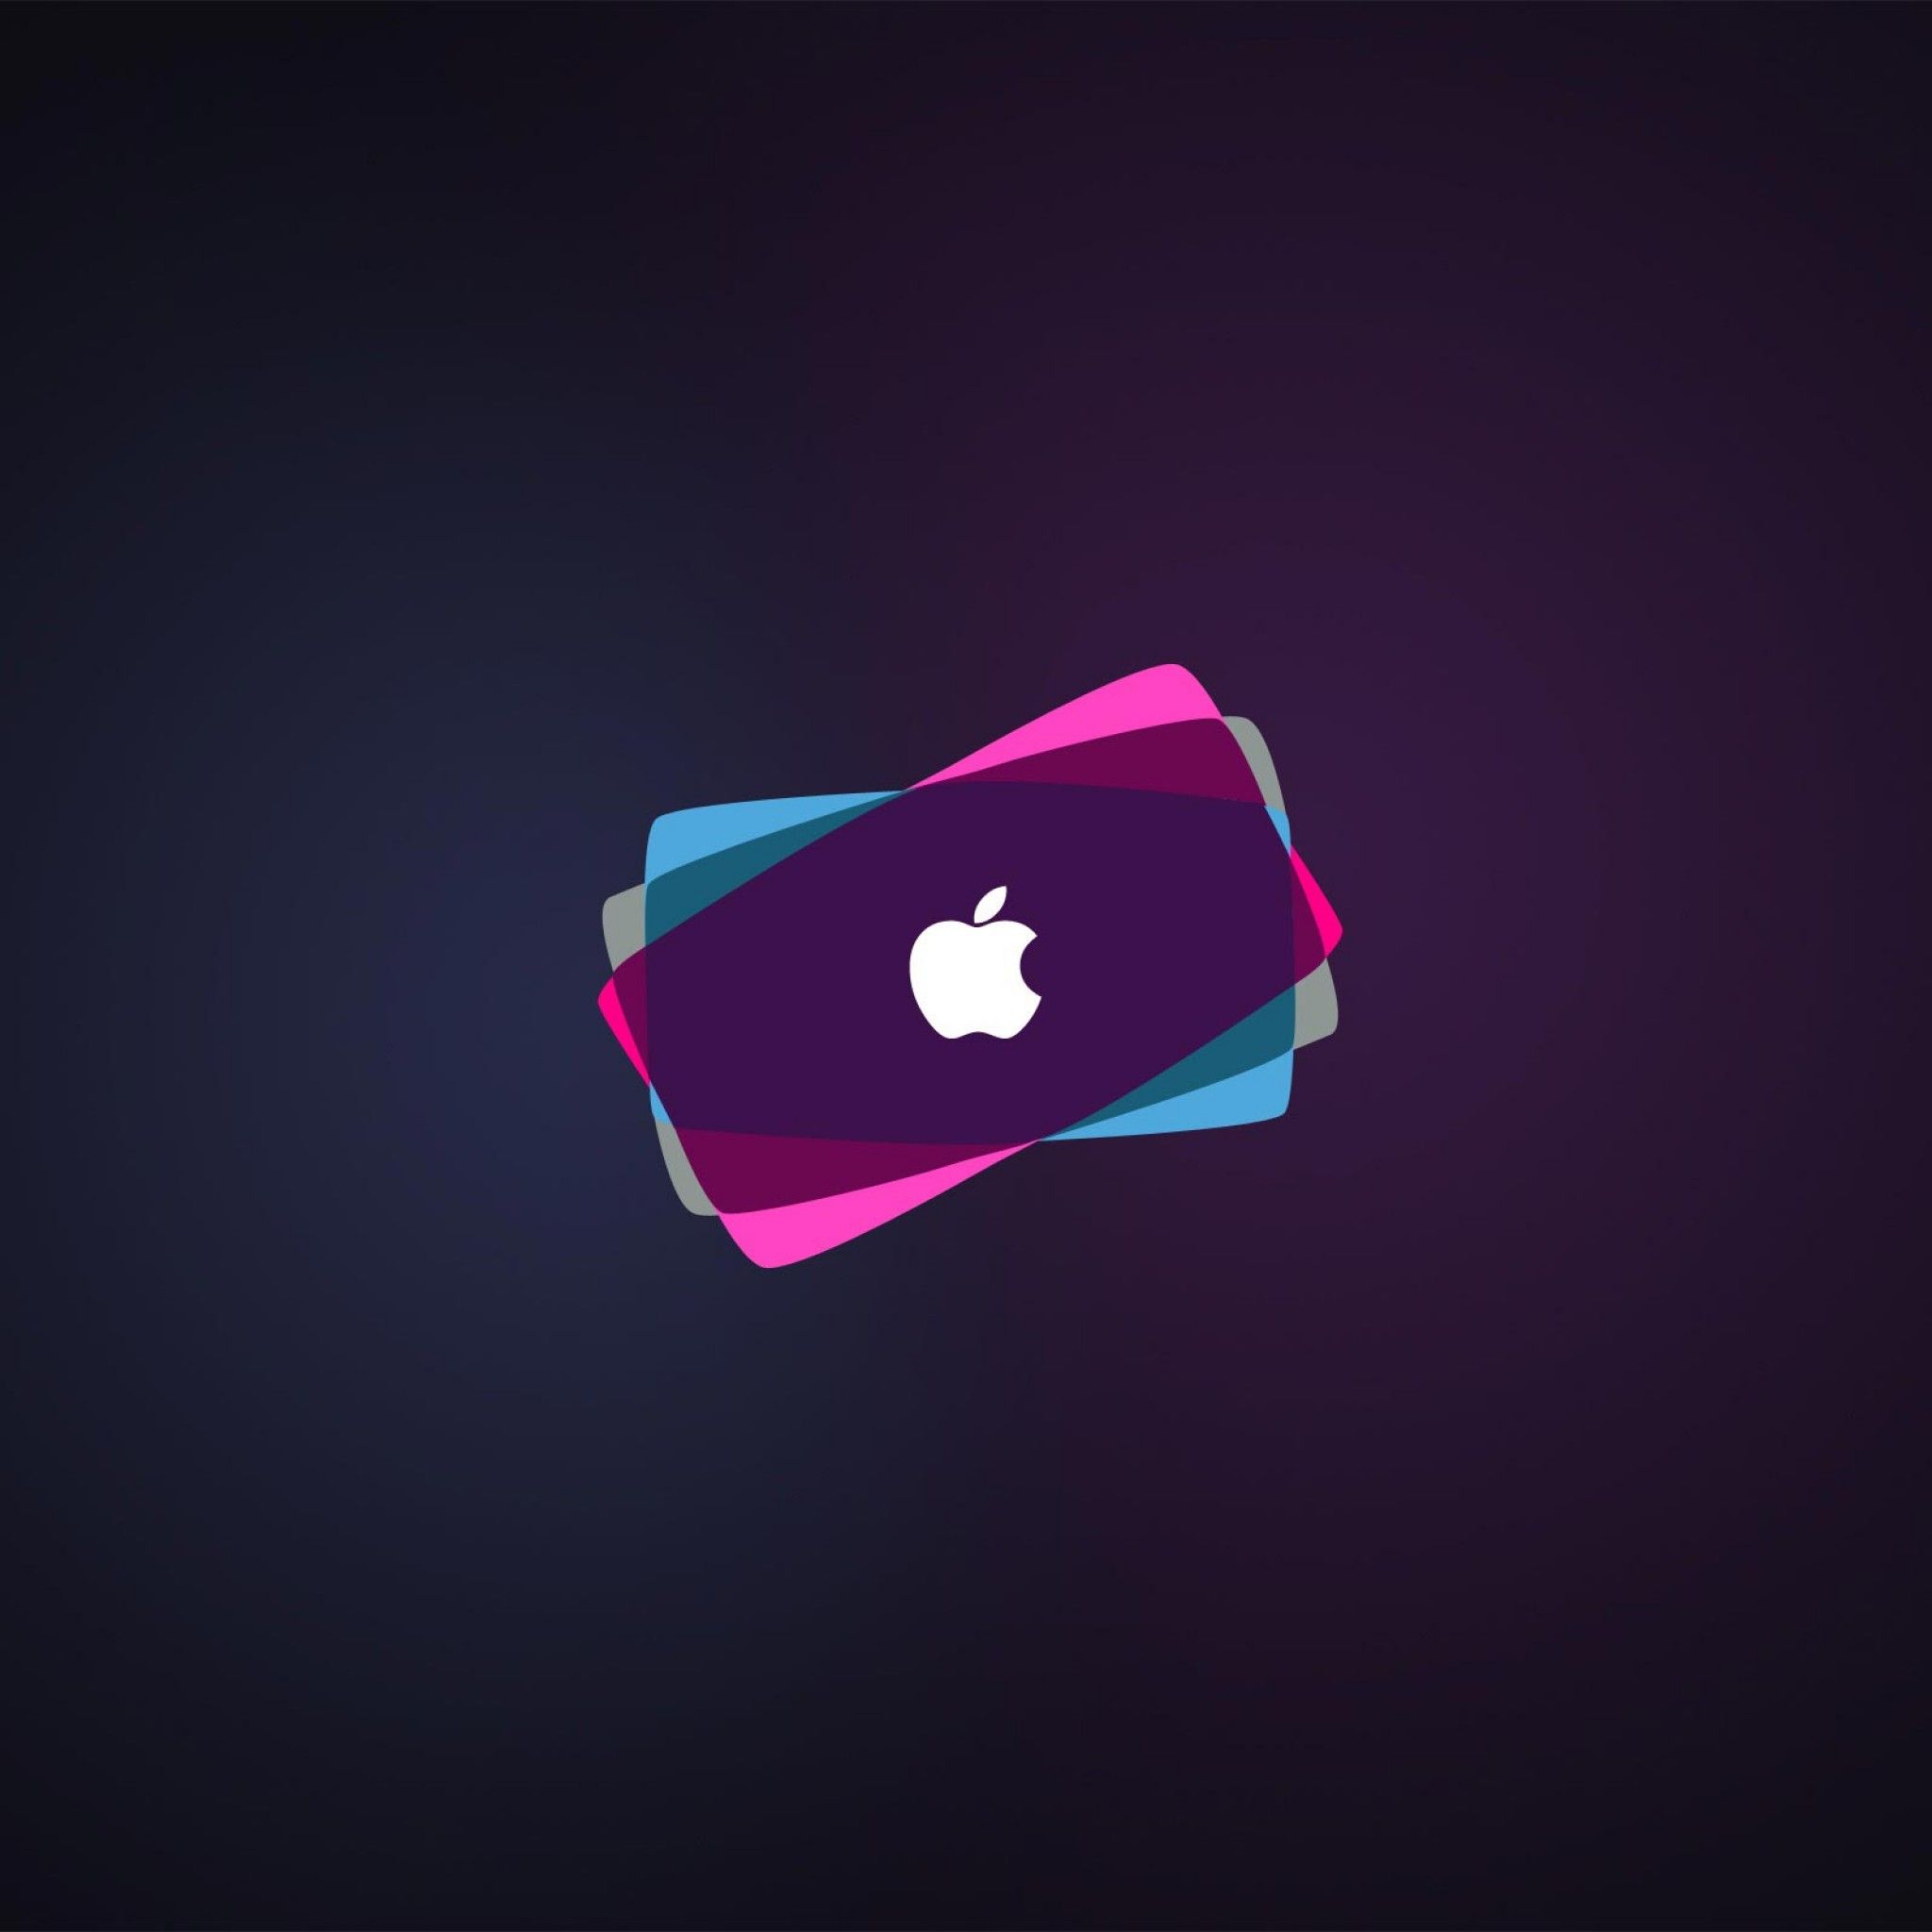 Free download apple ipad wallpaper HD 02 [2048x2048]